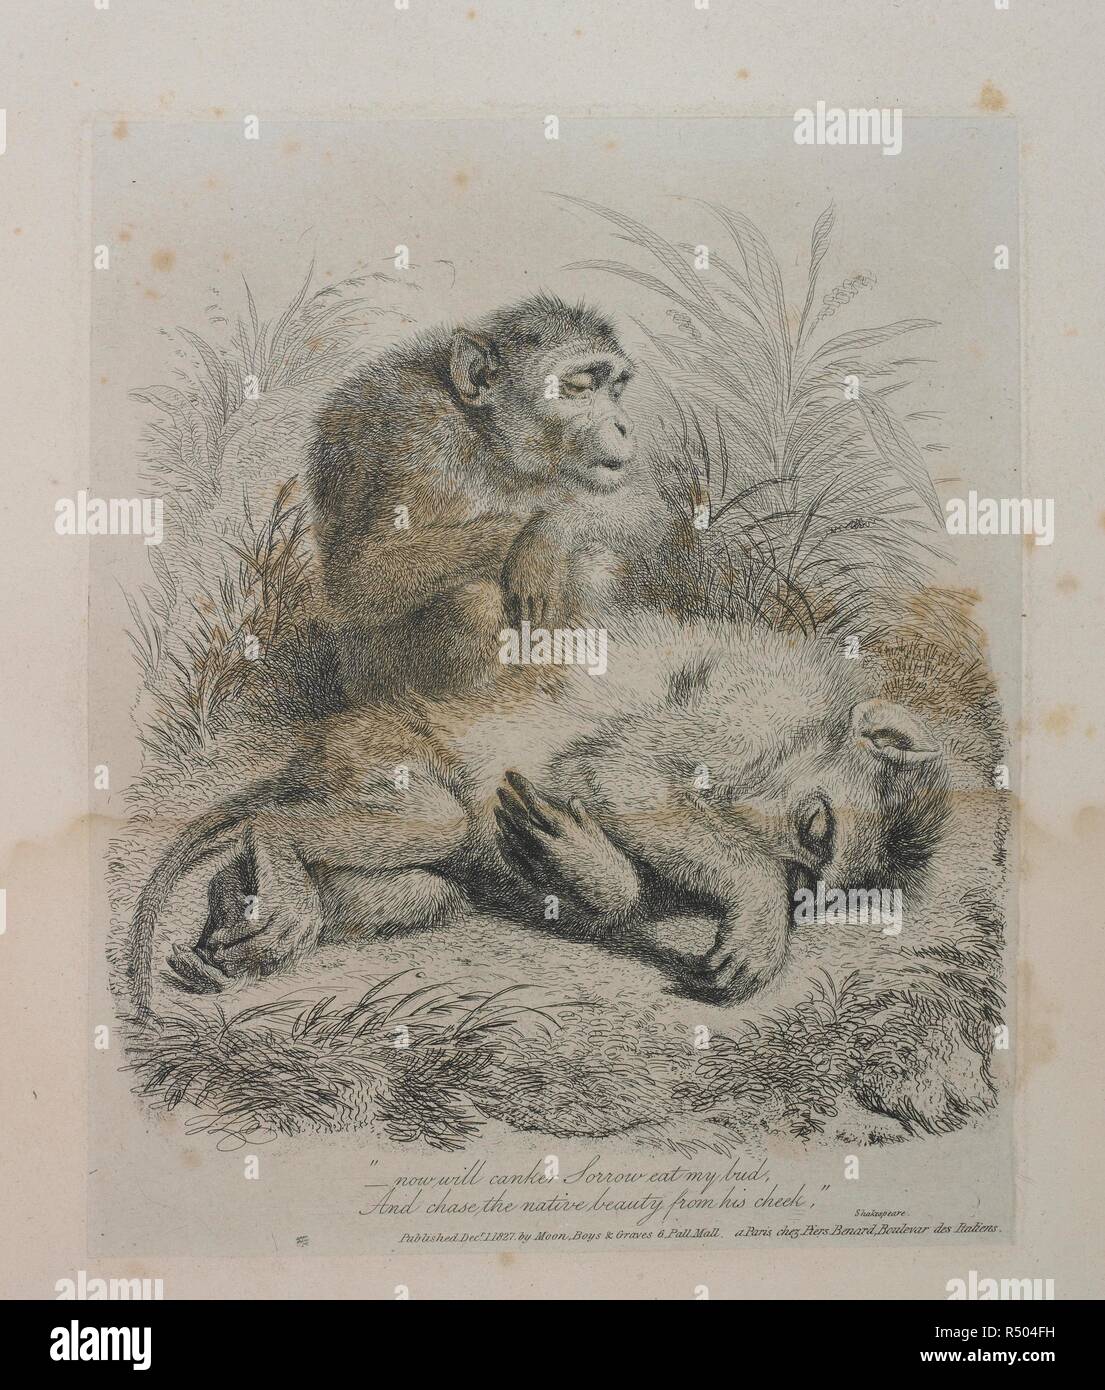 Les singes. Monkey-ana, ou [m]fr en miniature... Lune, Boys & Graves, 6 Pall Mall, Londres, 1828. Source : 1758.b.12, p.25. Langue : Anglais. Auteur : THOMAS, Landseer. Banque D'Images